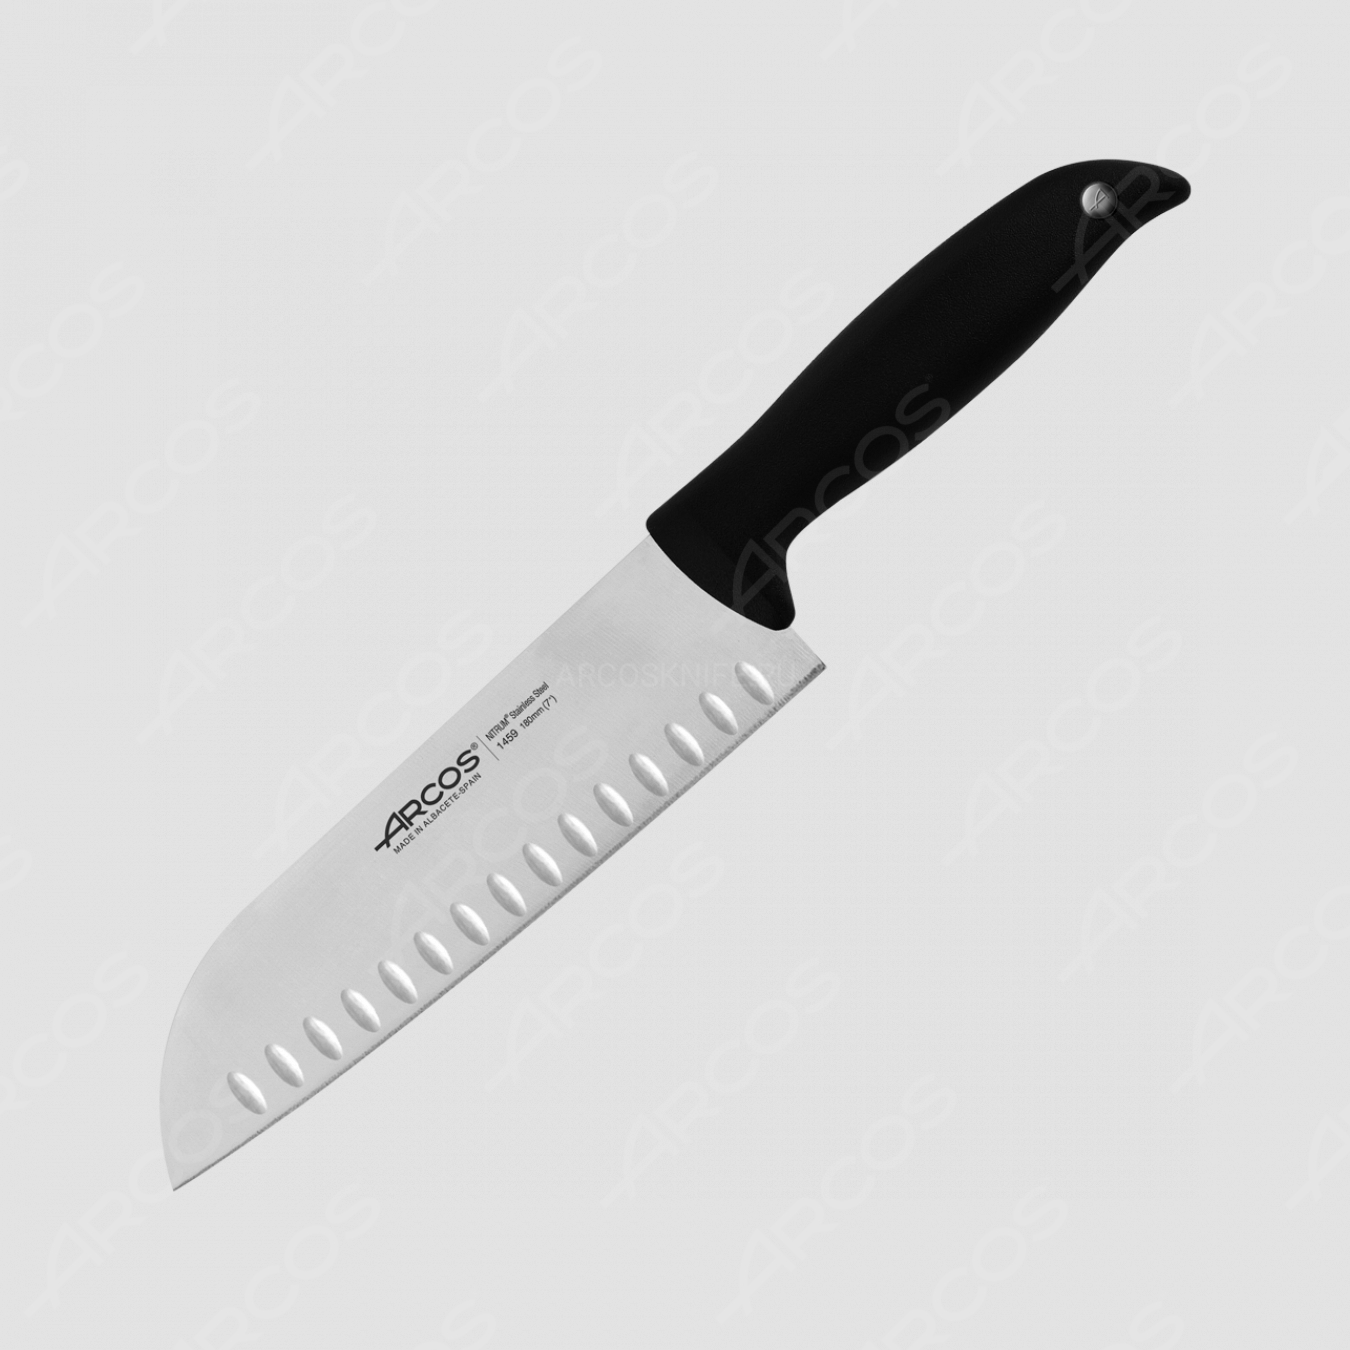 Нож кухонный Сантоку 18 см, серия Menorca, ARCOS, Испания